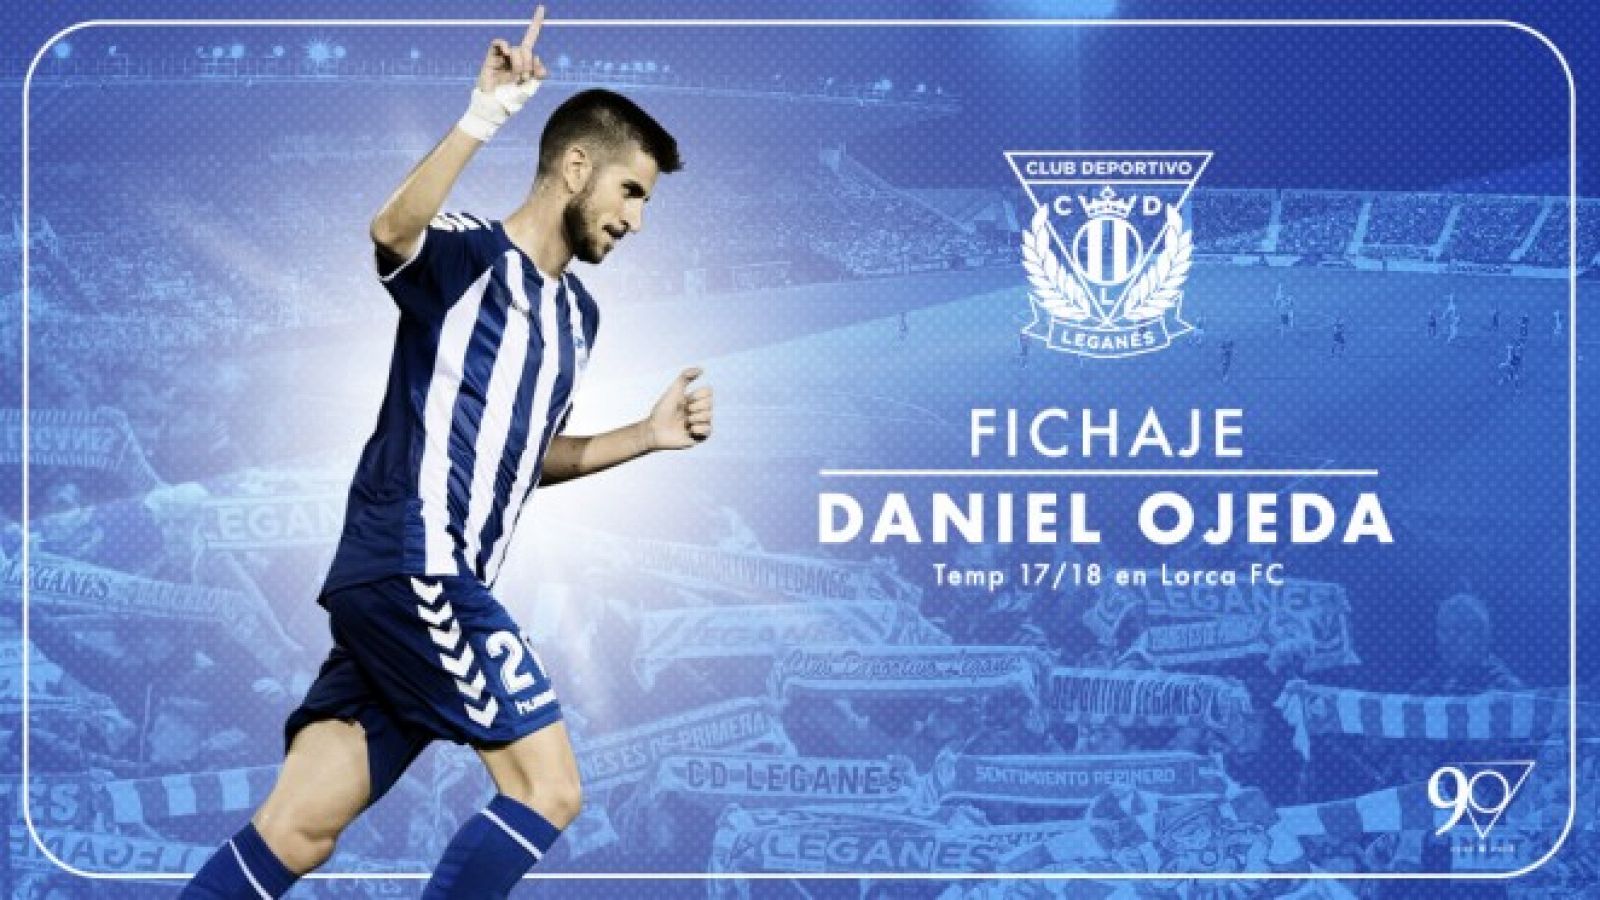 Imagen de Daniel Ojeda en la web oficial del CD Leganés.